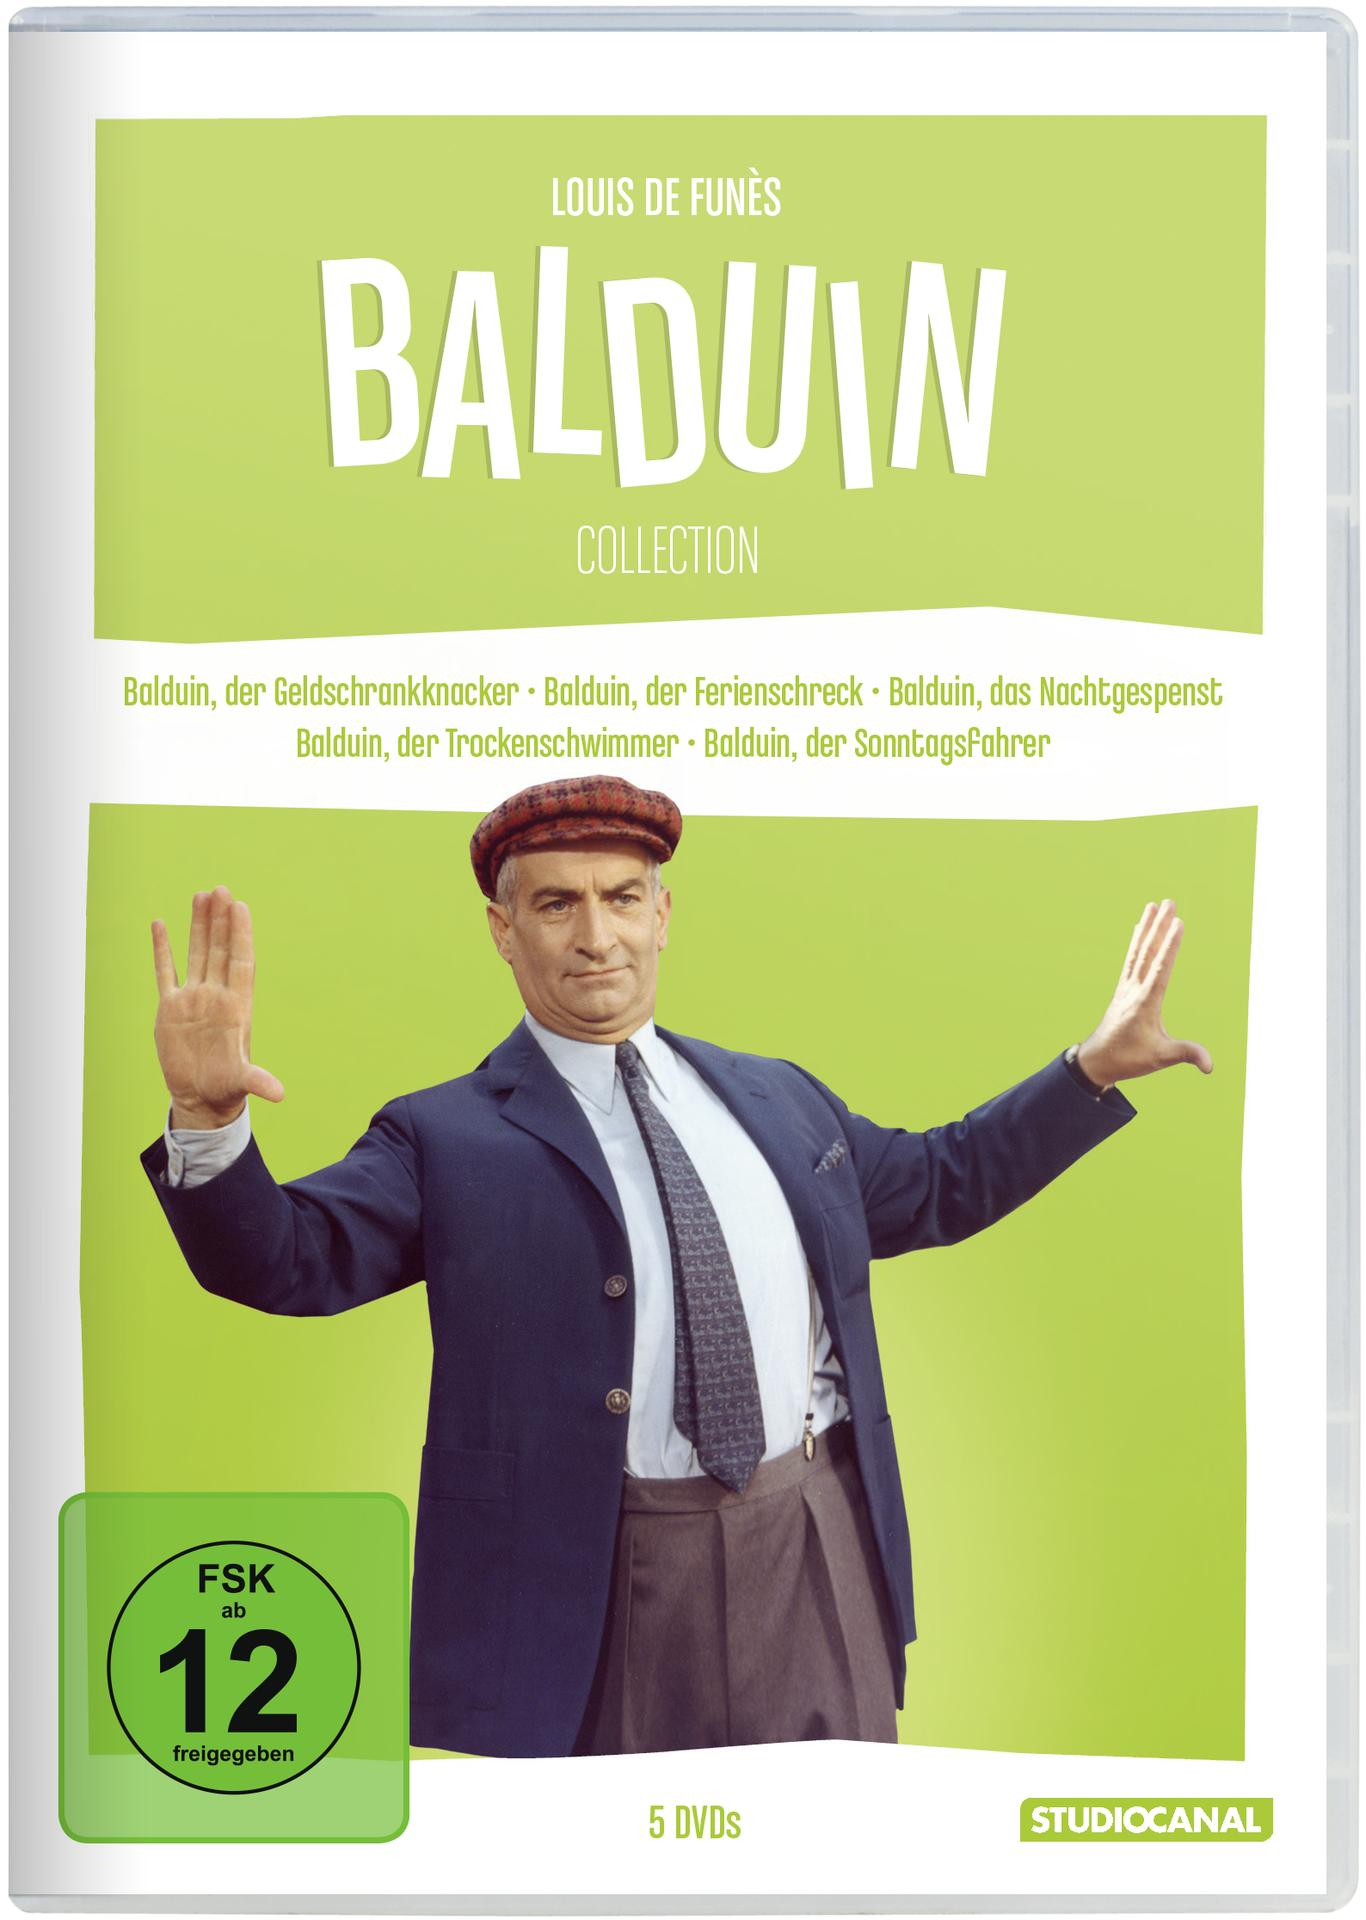 Louis de Funès / Die Collection DVD Balduin